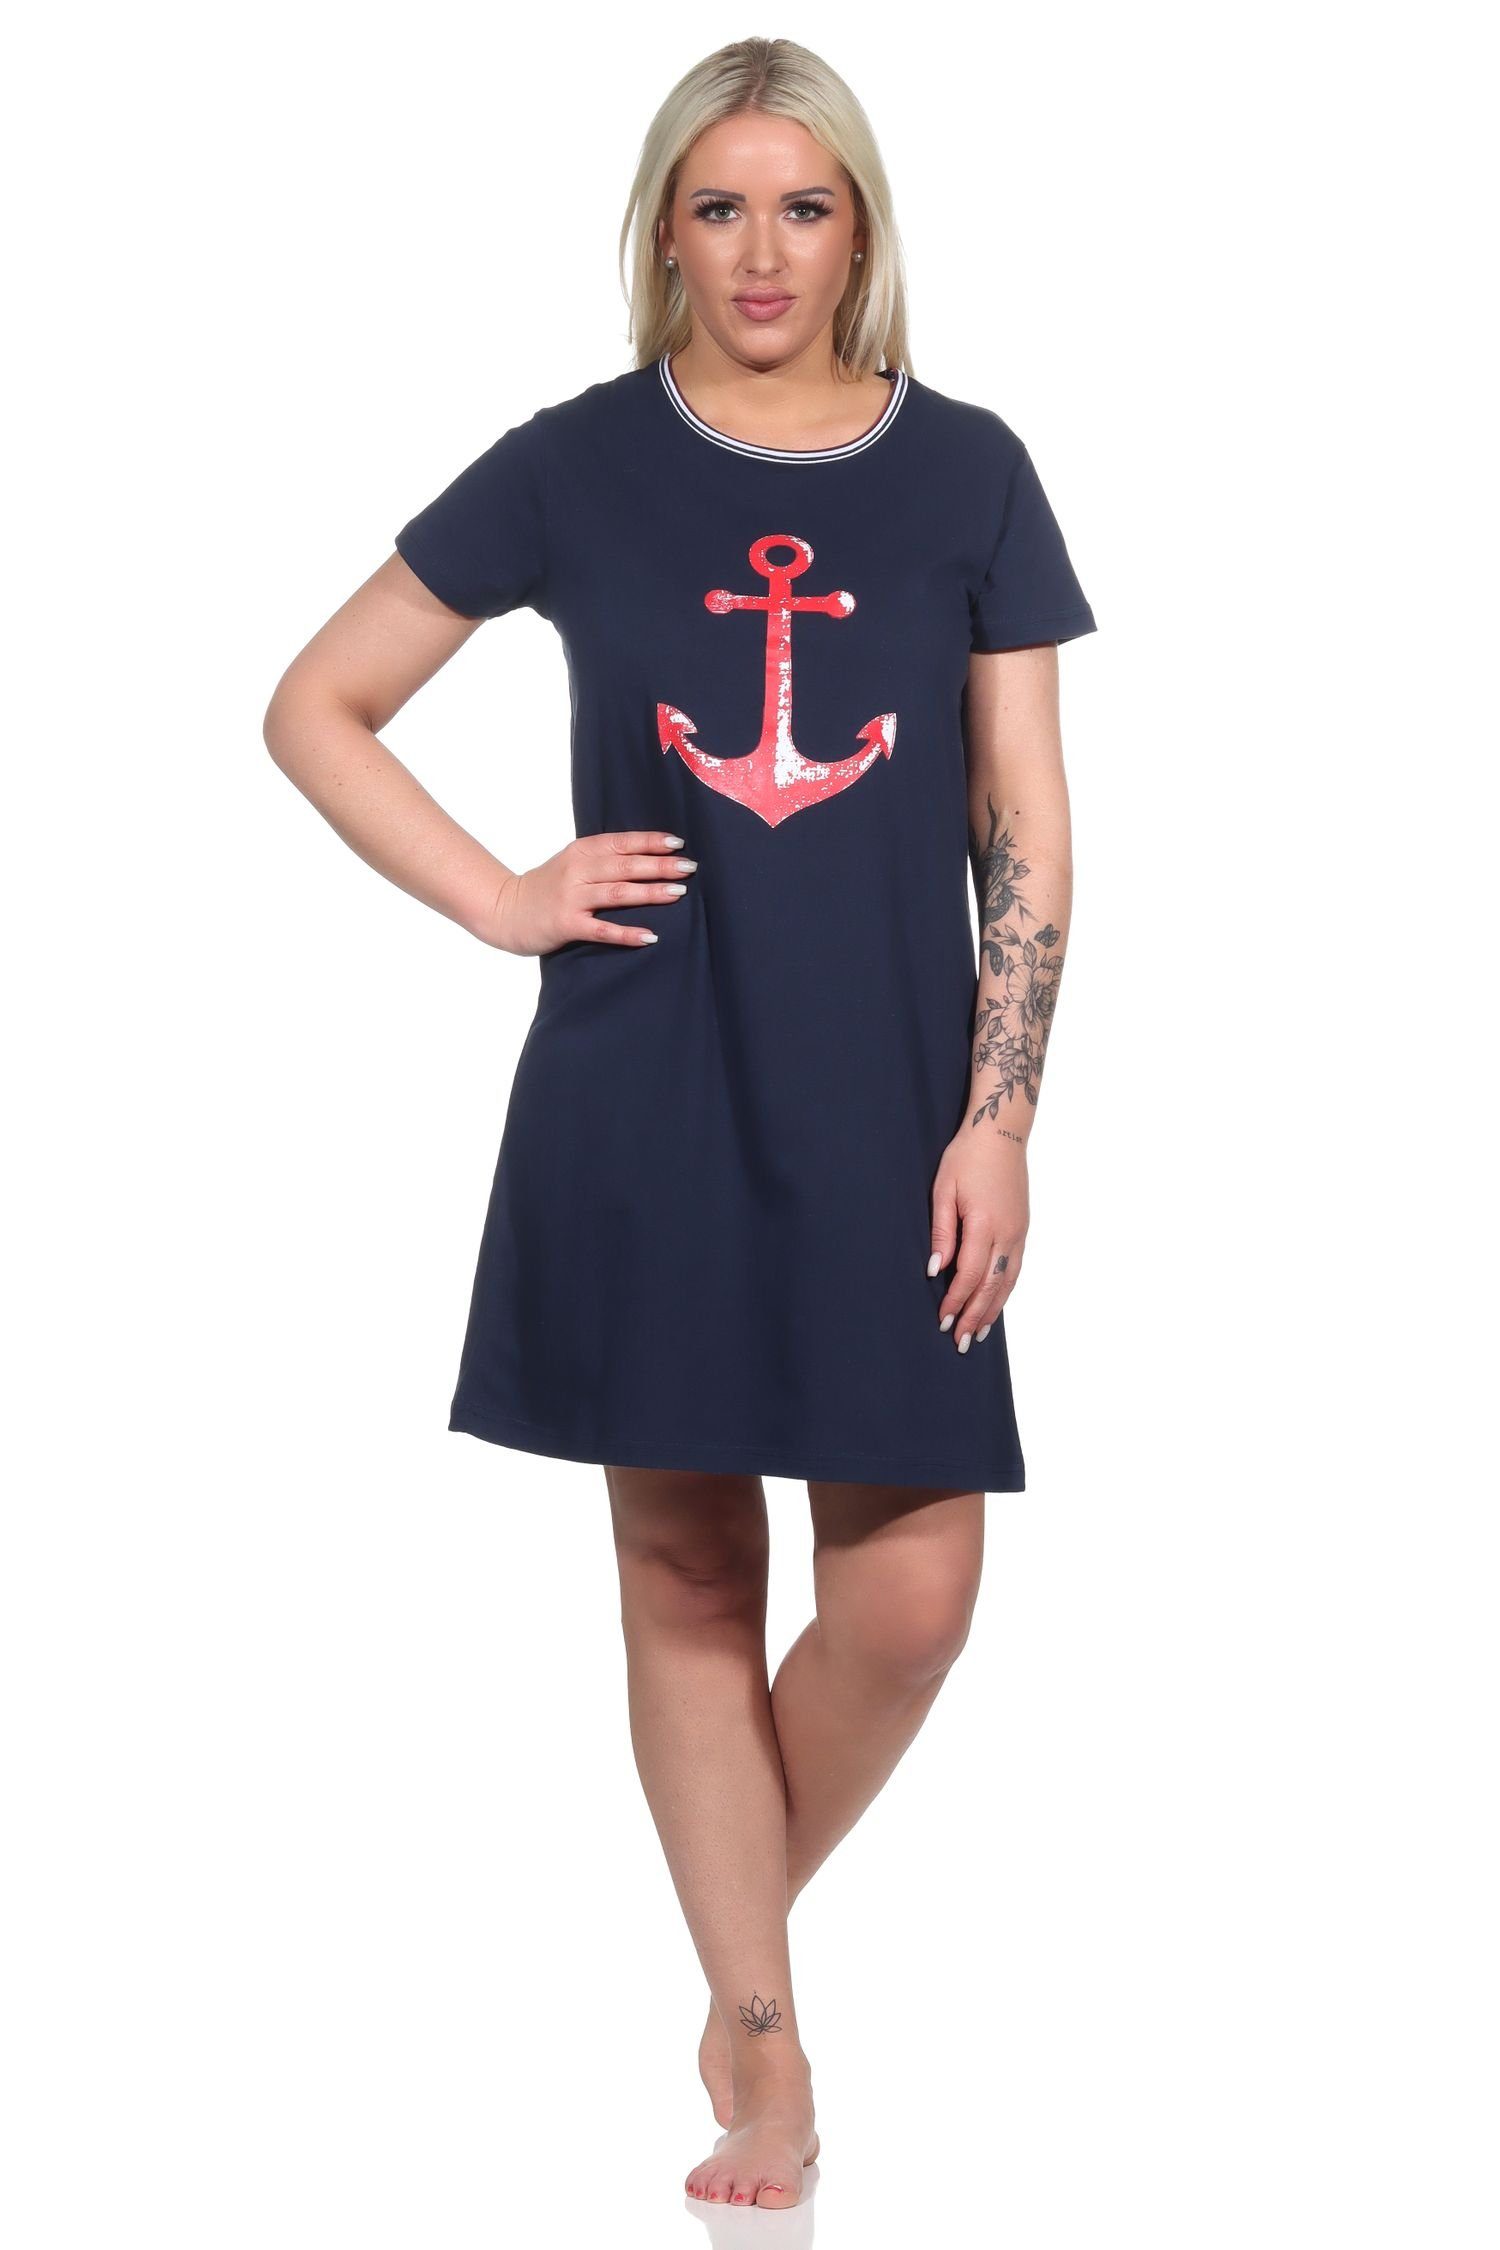 RELAX by Normann Nachthemd Maritimes Damen kurzarm Nachthemd mit Anker-Motiv - 122 10 755 marine